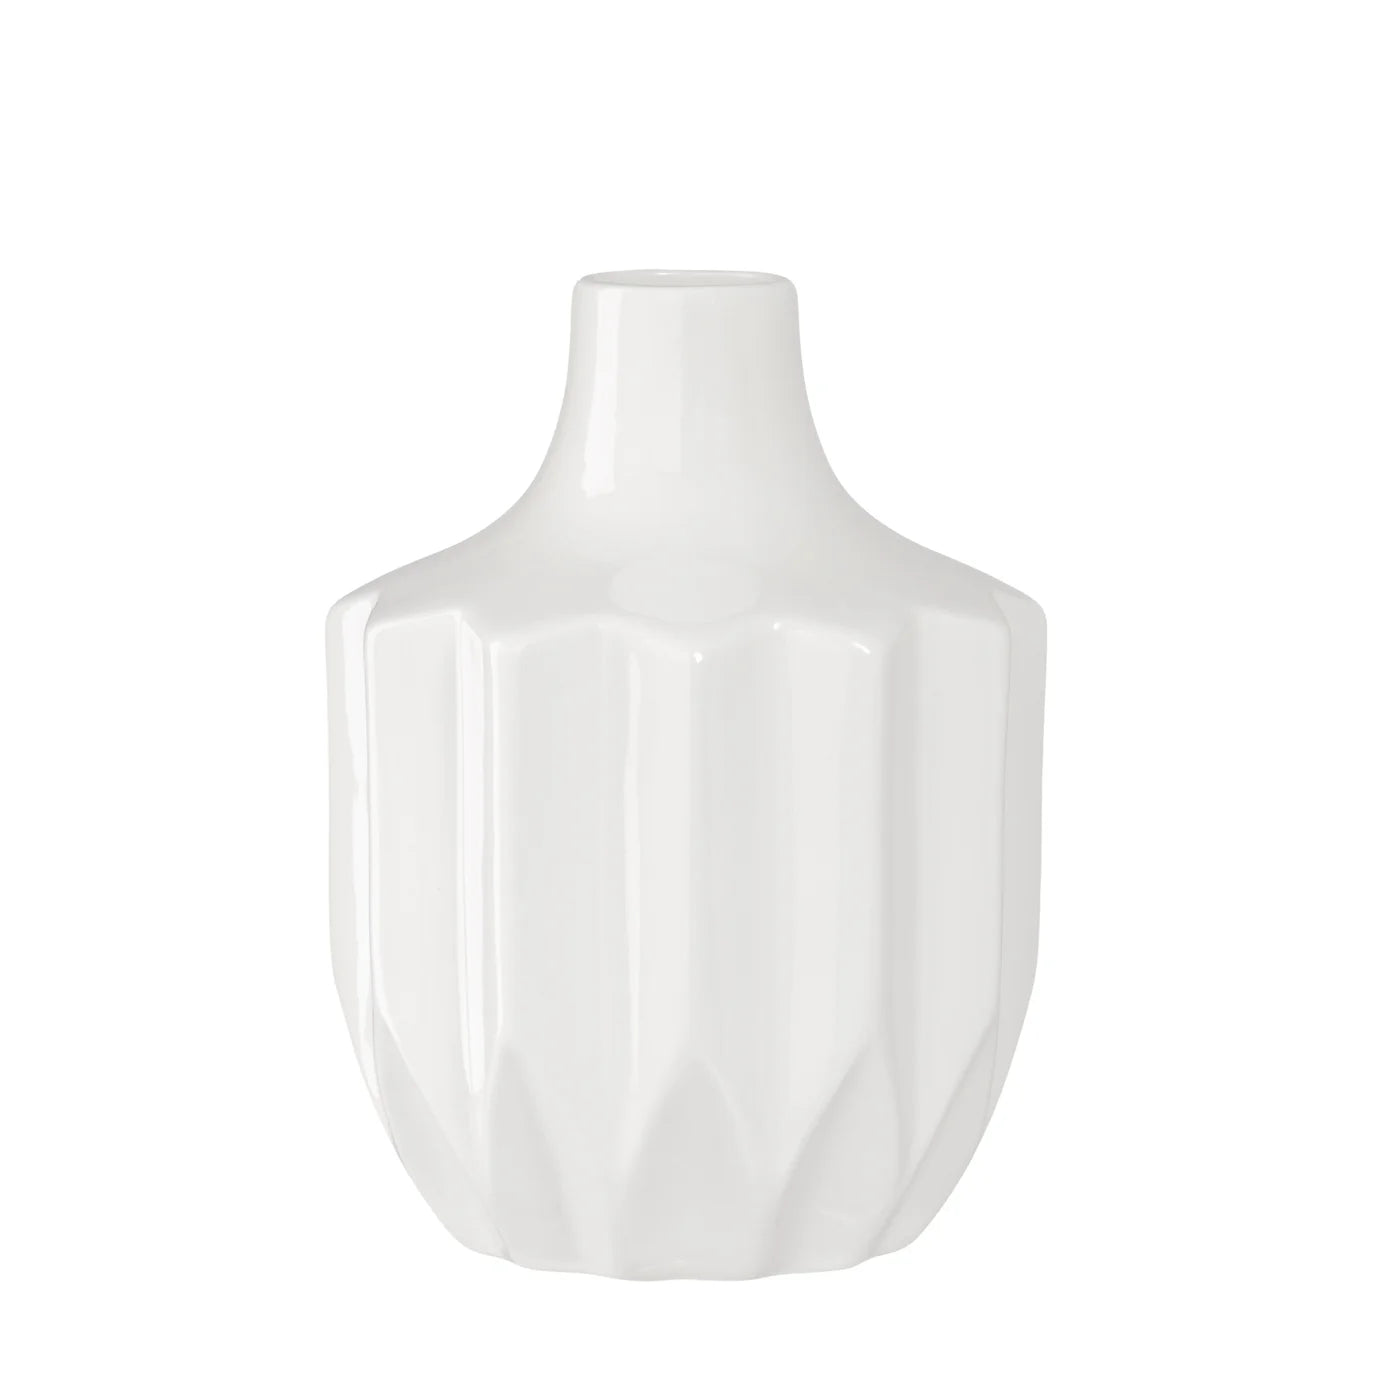 Linear Vase - Abstract Shiny White Glaze Ceramic